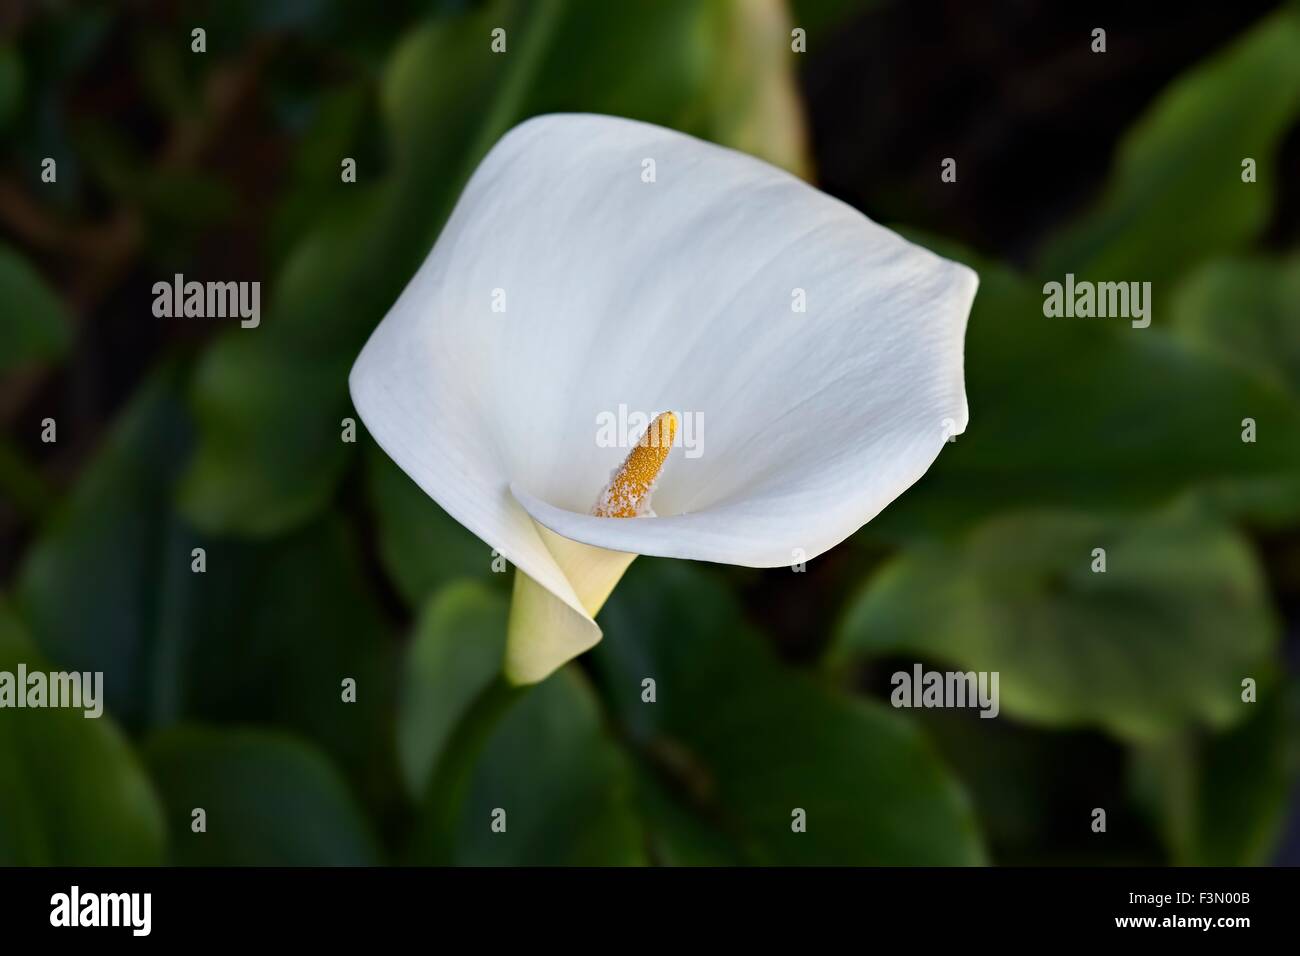 Zantedeschia aethiopica Calla blanc lilly trompette. Zantedeschia aethiopica est une espèce de la famille des Aracées, originaire du sud de l'Afrique dans Lesot Banque D'Images